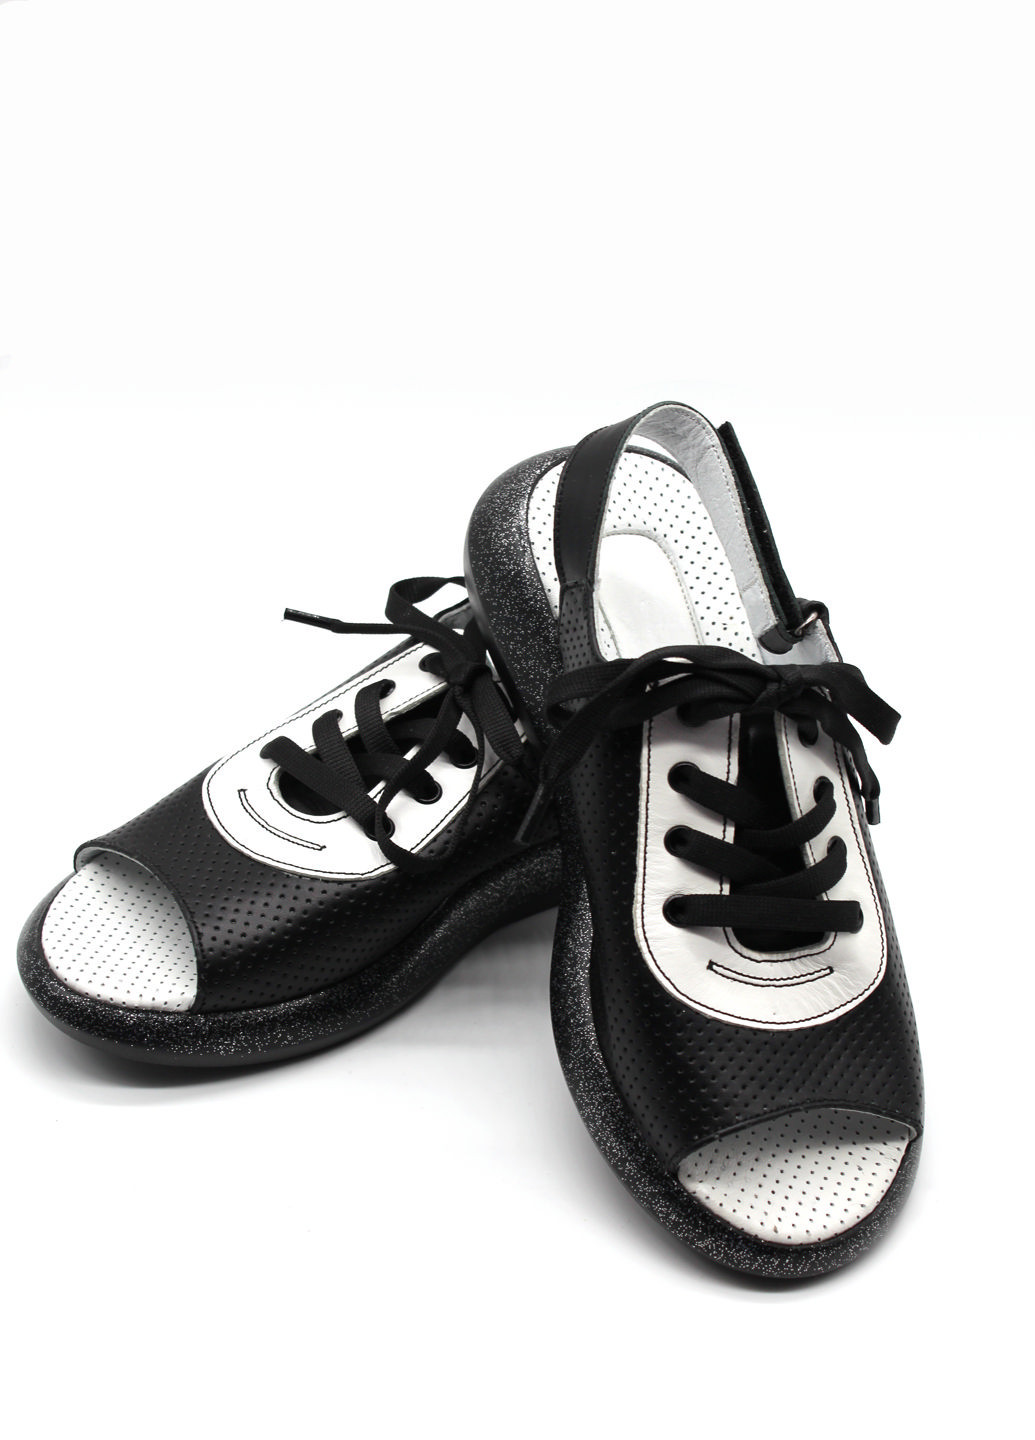 Черно-белые босоножки Rifellini на липучке с глиттером, со шнуровкой, с тиснением, с перфорацией